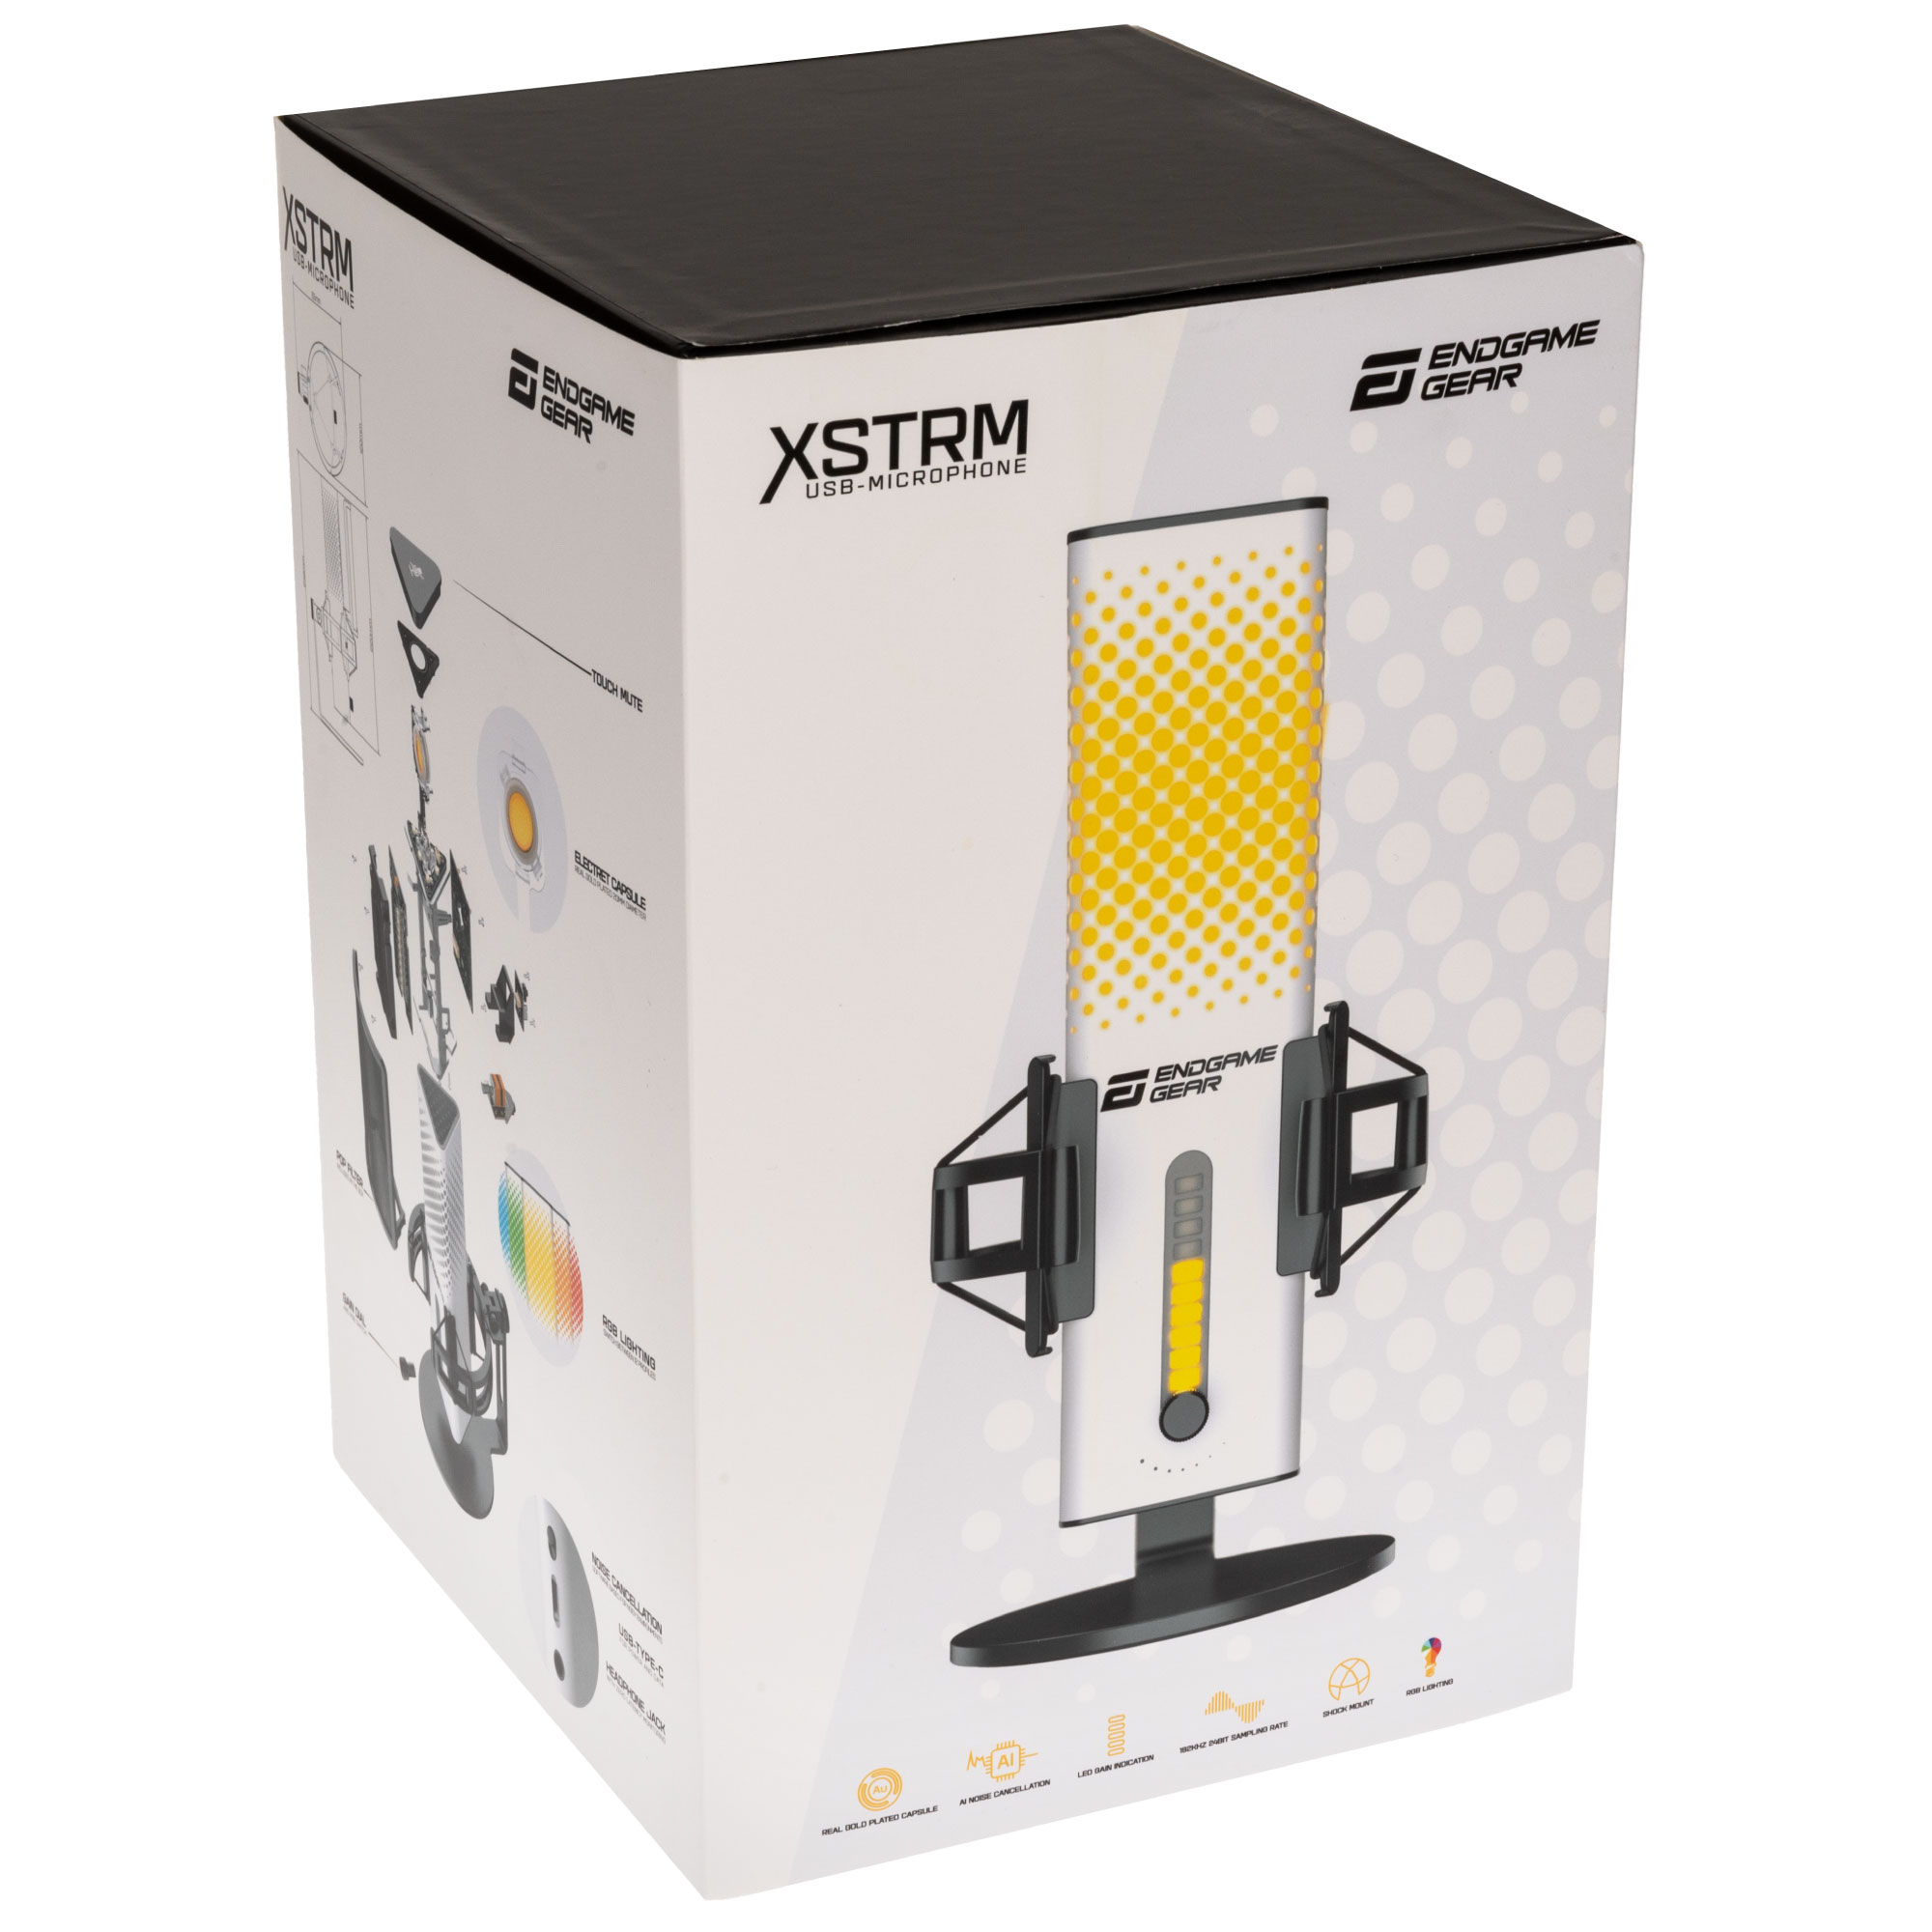 XSTRM USBコンデンサーマイク - Endgame Gear - 株式会社アーキサイト